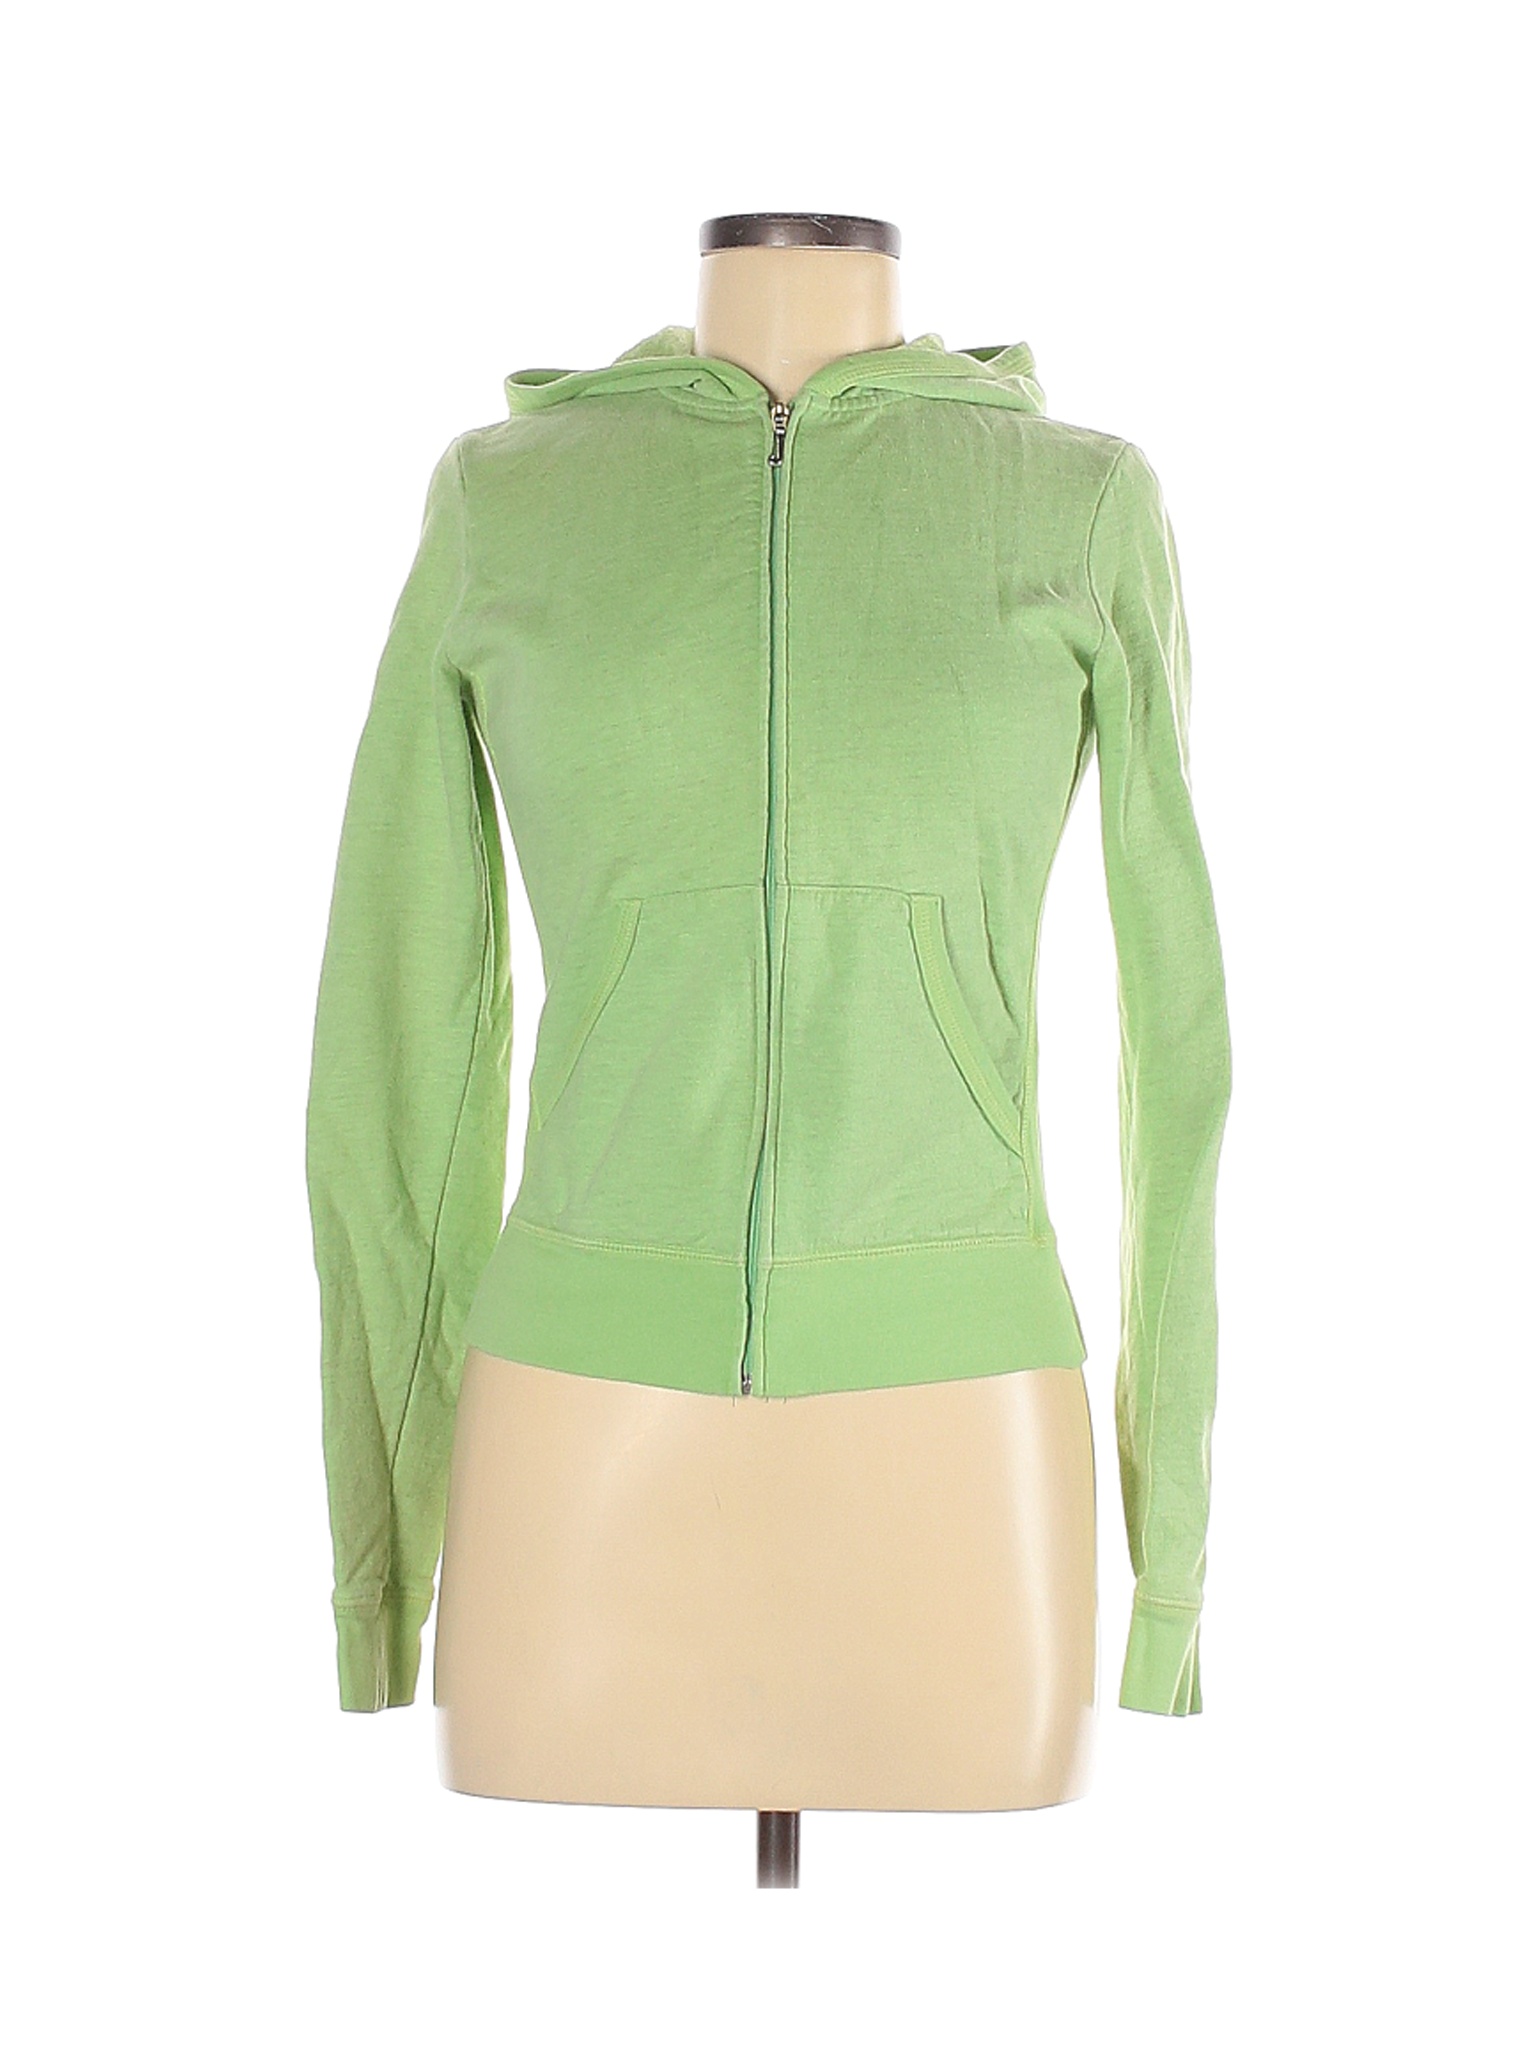 Juicy Couture Women Green Zip Up Hoodie M | eBay